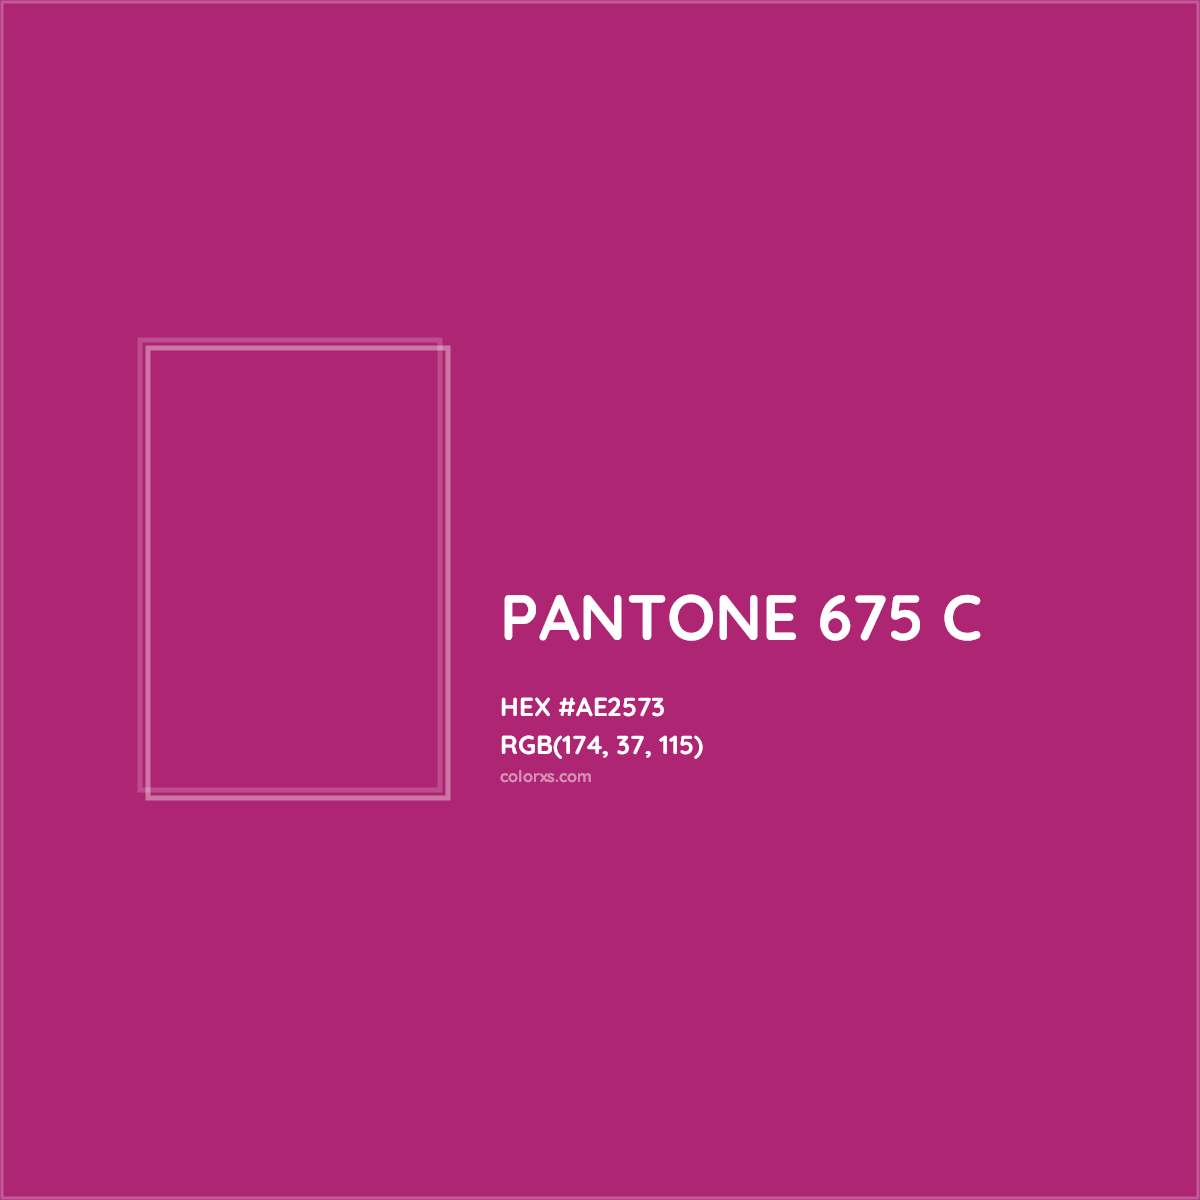 HEX #AE2573 PANTONE 675 C CMS Pantone PMS - Color Code